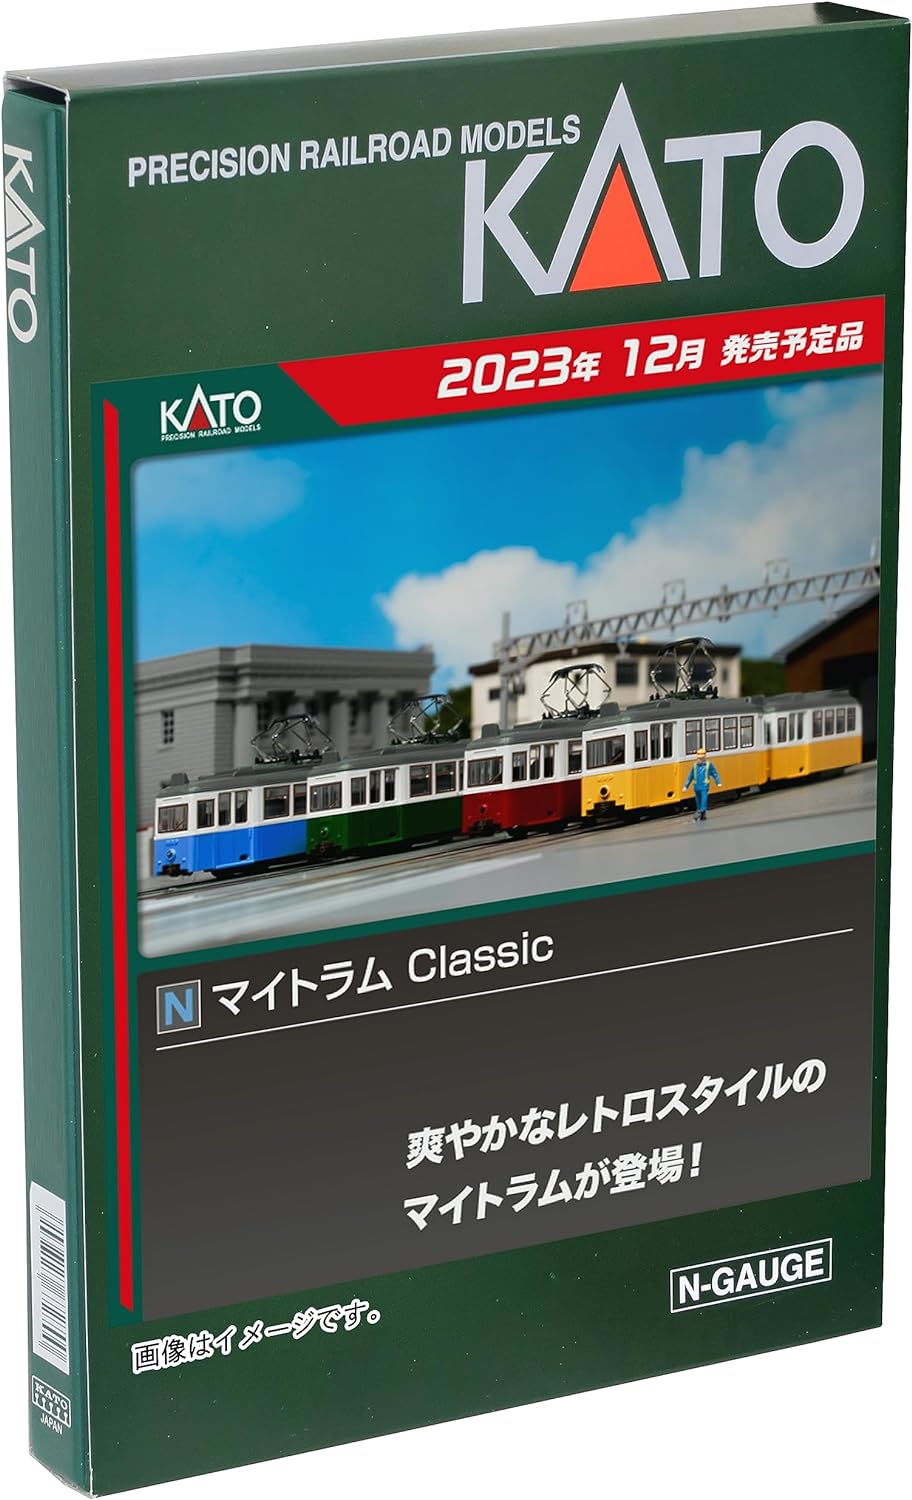 KATO 14-806-3 N Gauge Maitram Classic RED Model Train - BanzaiHobby